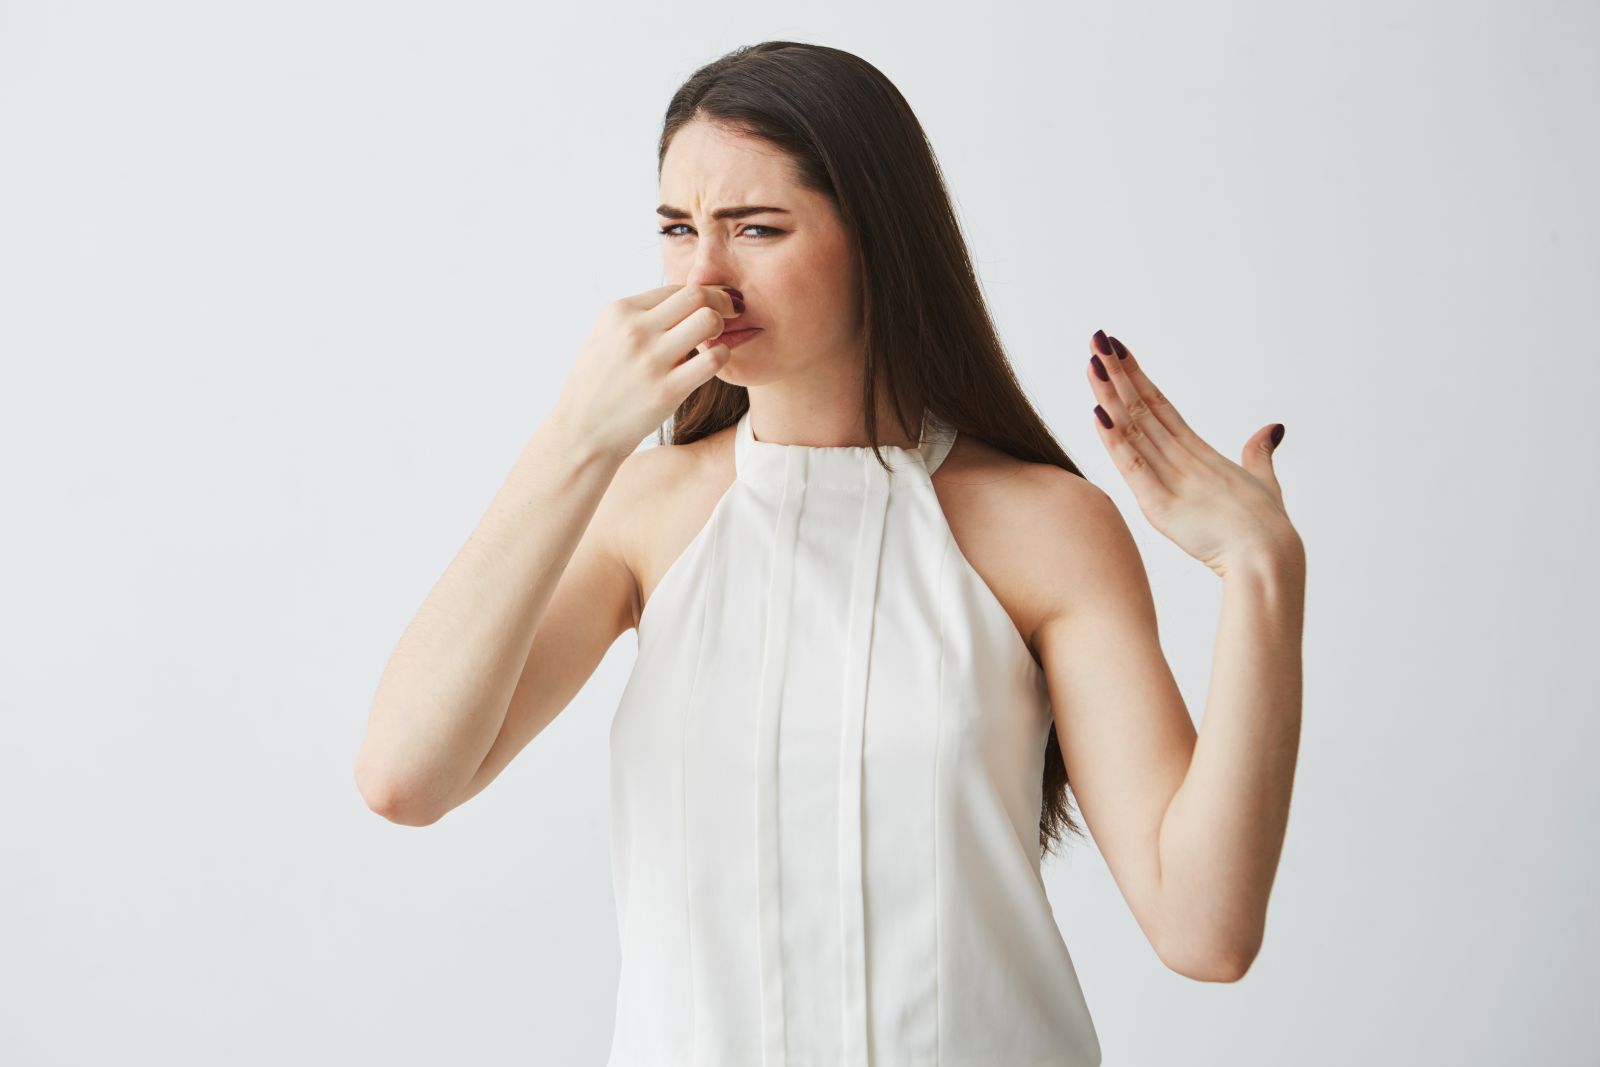 Fijnstof in gebouwen veroorzaakt ademhalingsproblemen zoals astma